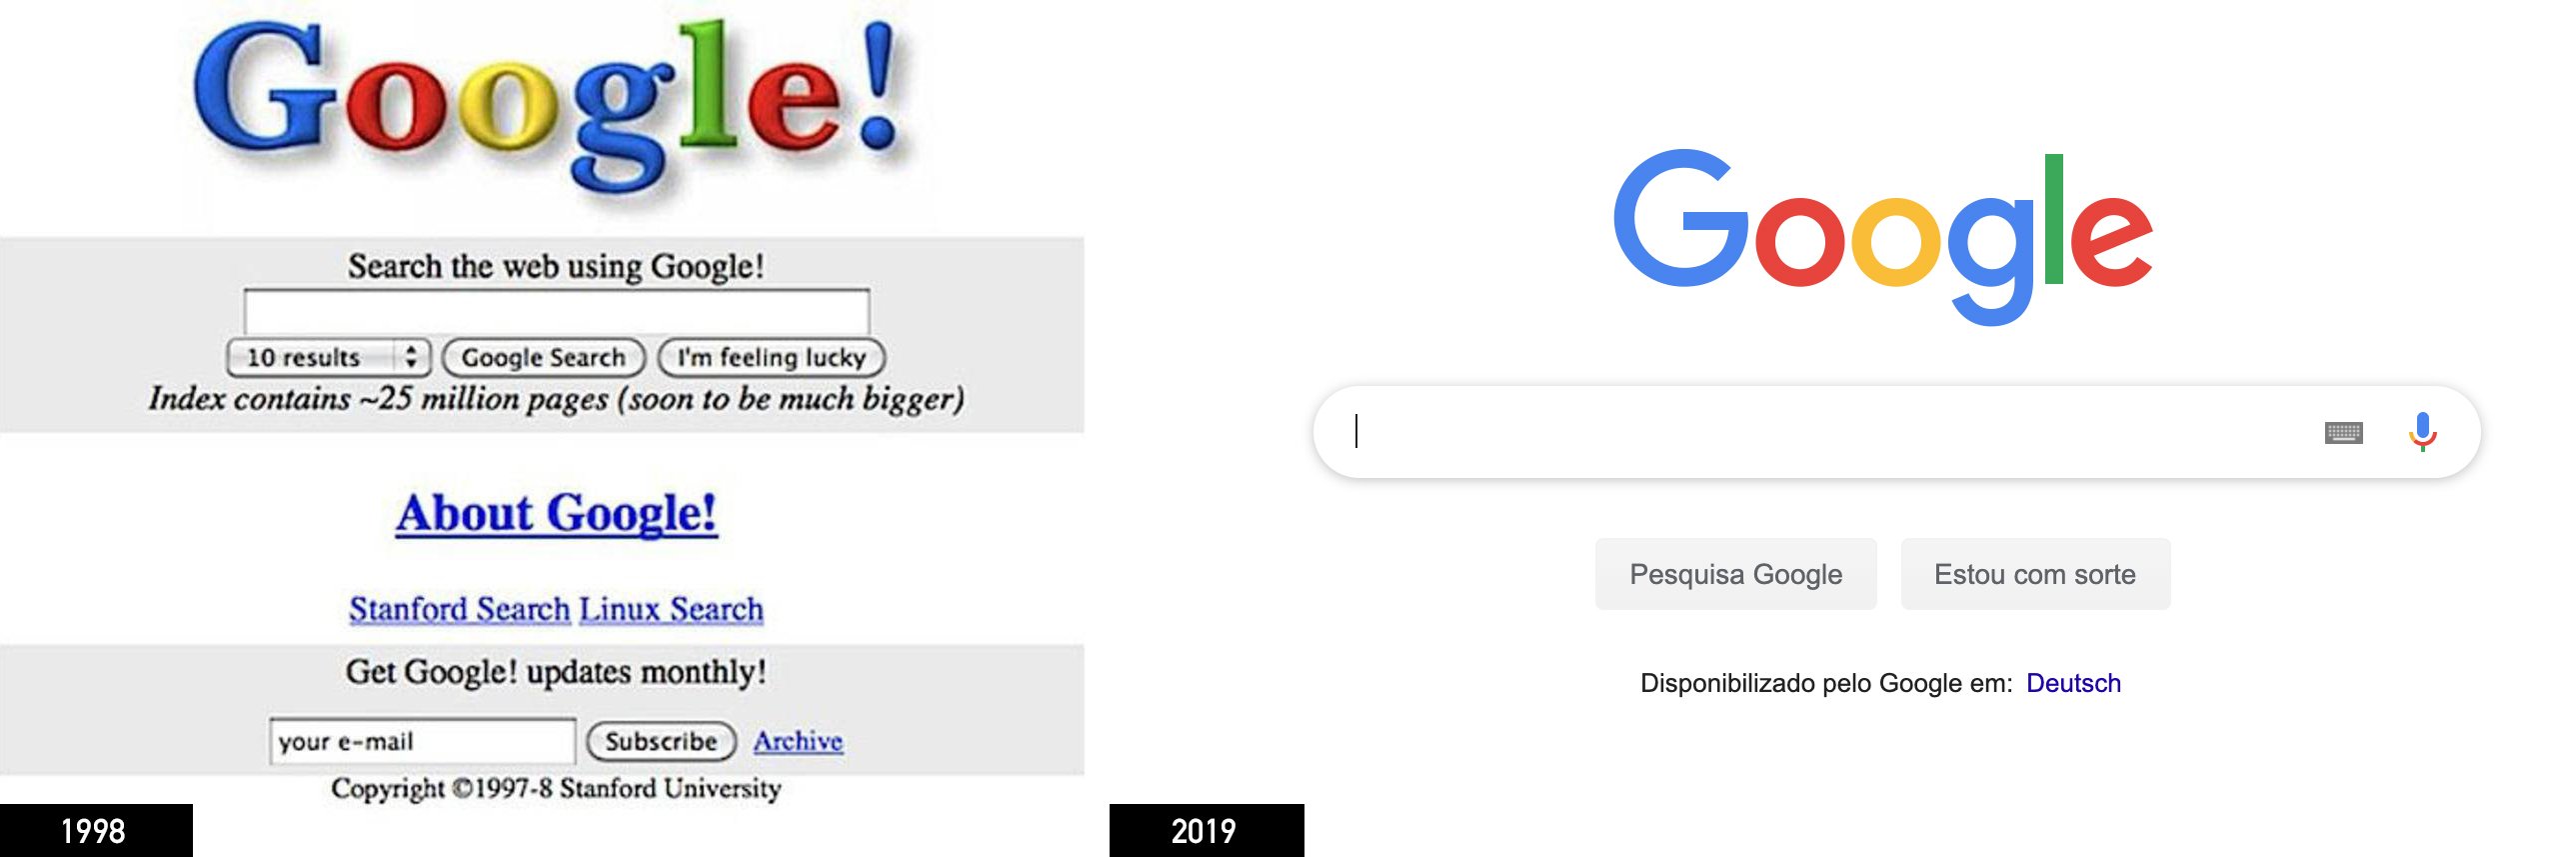 Google en 1998 y 2019